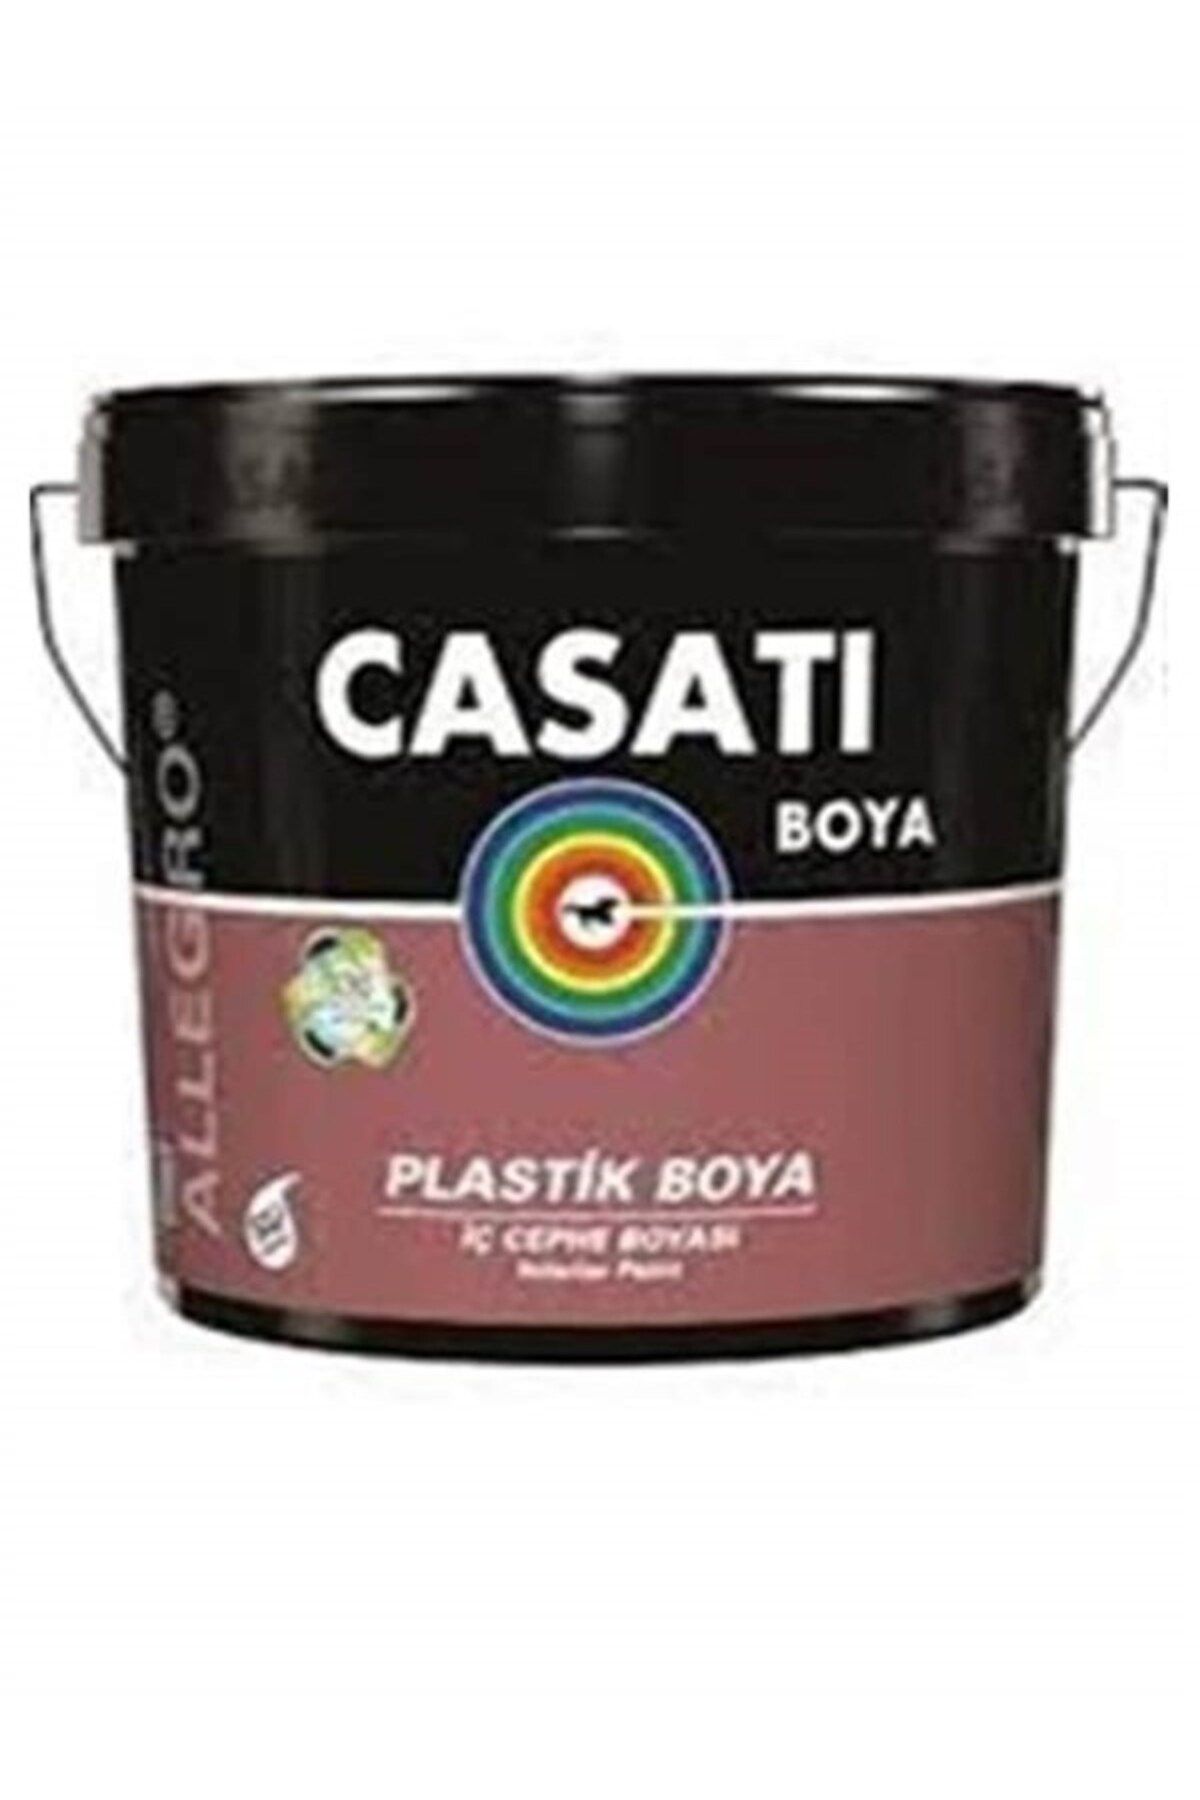 Casati Dyo Casati Allegro Plastik Iç Cephe Duvar Boyası 10 Kg Tüm Renkler Mevcuttur